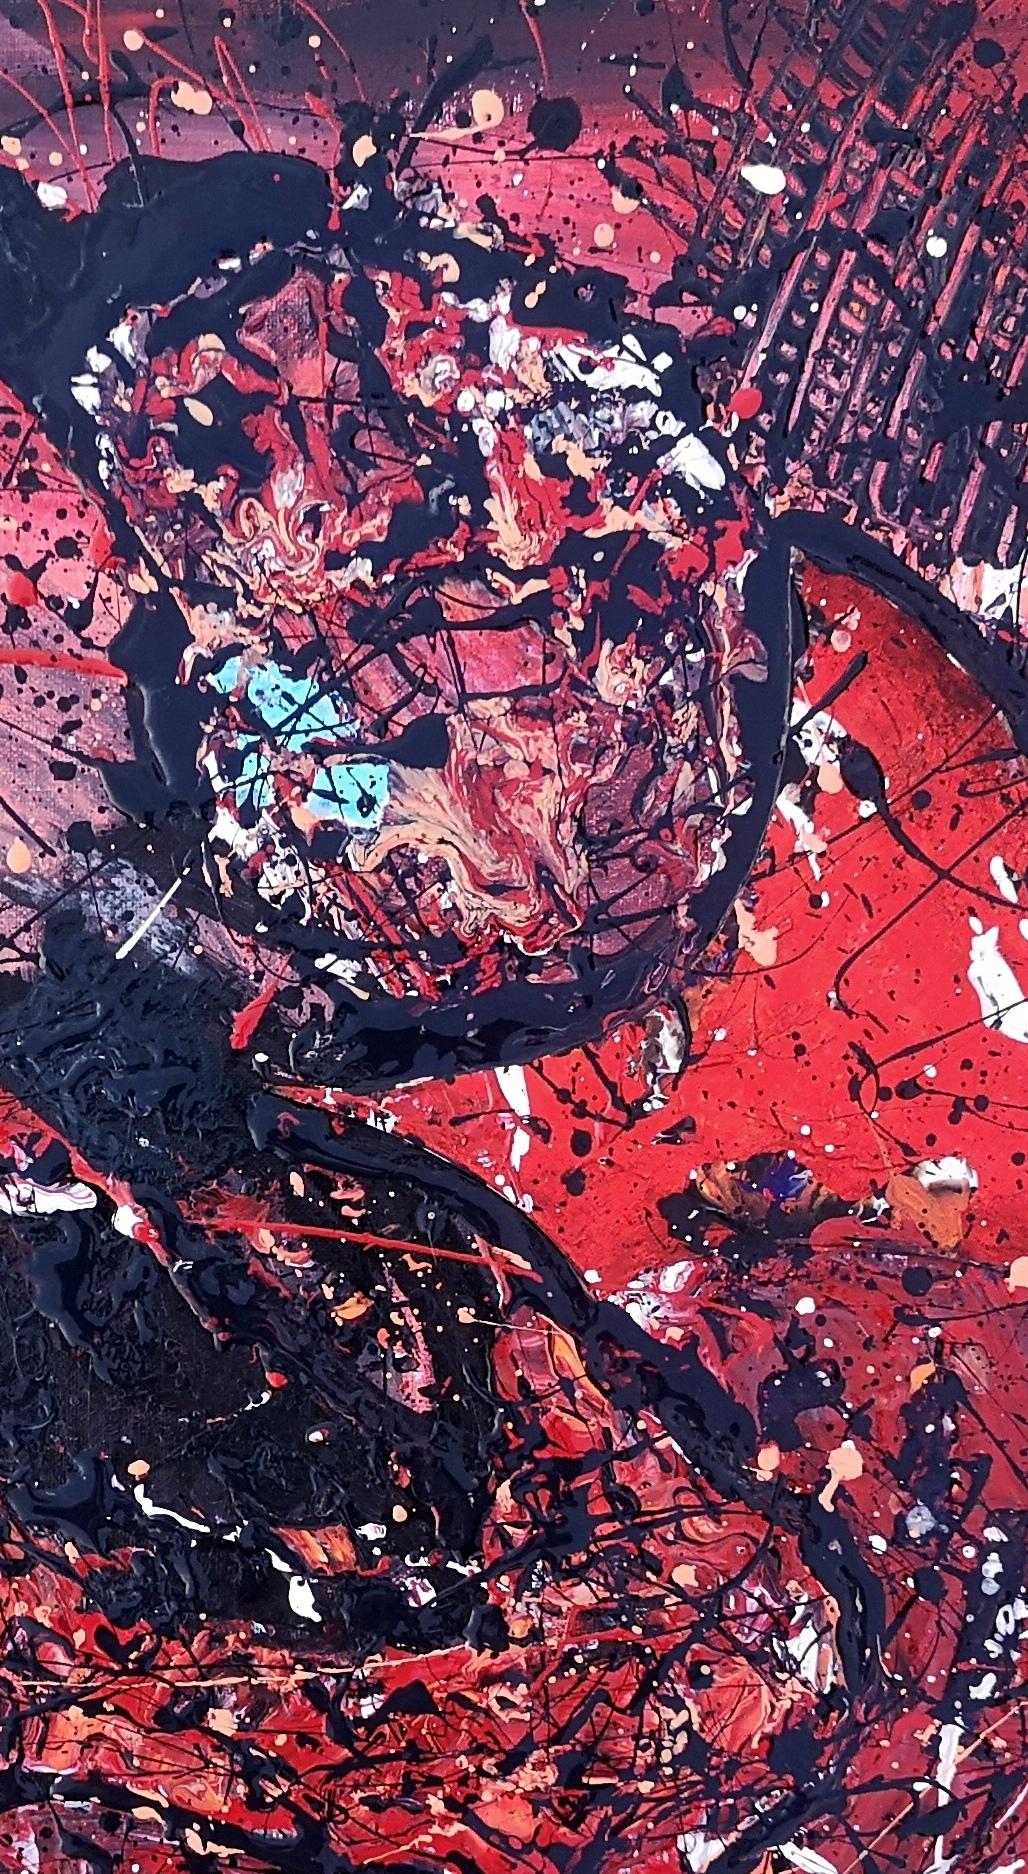 Acryl auf gespannter Leinwand 80X60 cm
Abstrakter Expressionismus.
Pollock-Stil.  Action painting.  Tropfbilder.

Internationale Künstlerin, die in der Expressionismus-Bewegung bekannt ist
Er ist abstinent und lebt in Aubusson (Frankreich), im